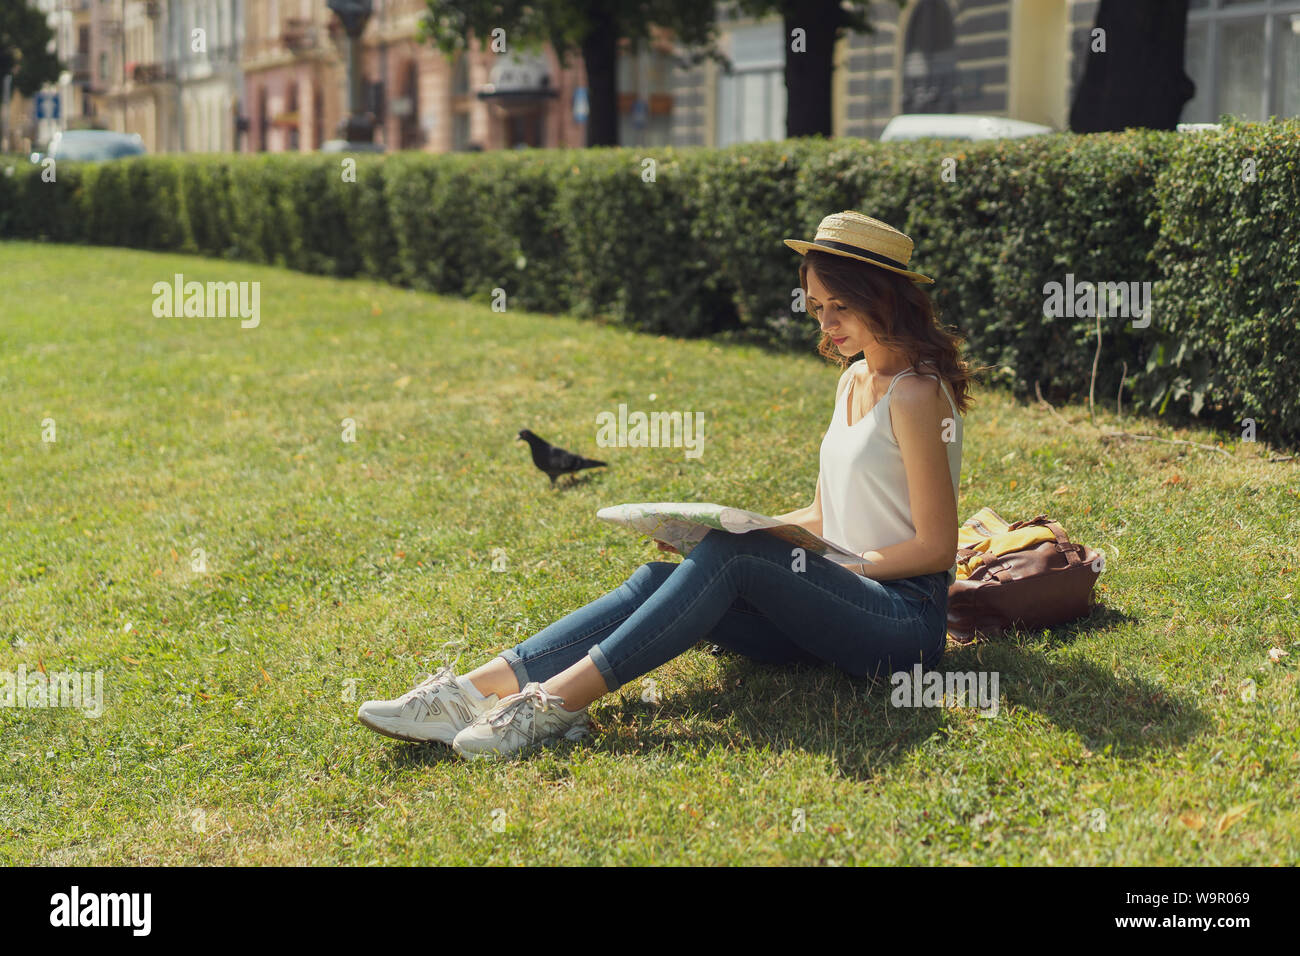 Freiheit und Glück Konzept. Schöne junge Frau hippie Style sitzt auf Gras genießen Sie sonnige Tag im Park. Sommer glücklichen Moment. Stockfoto